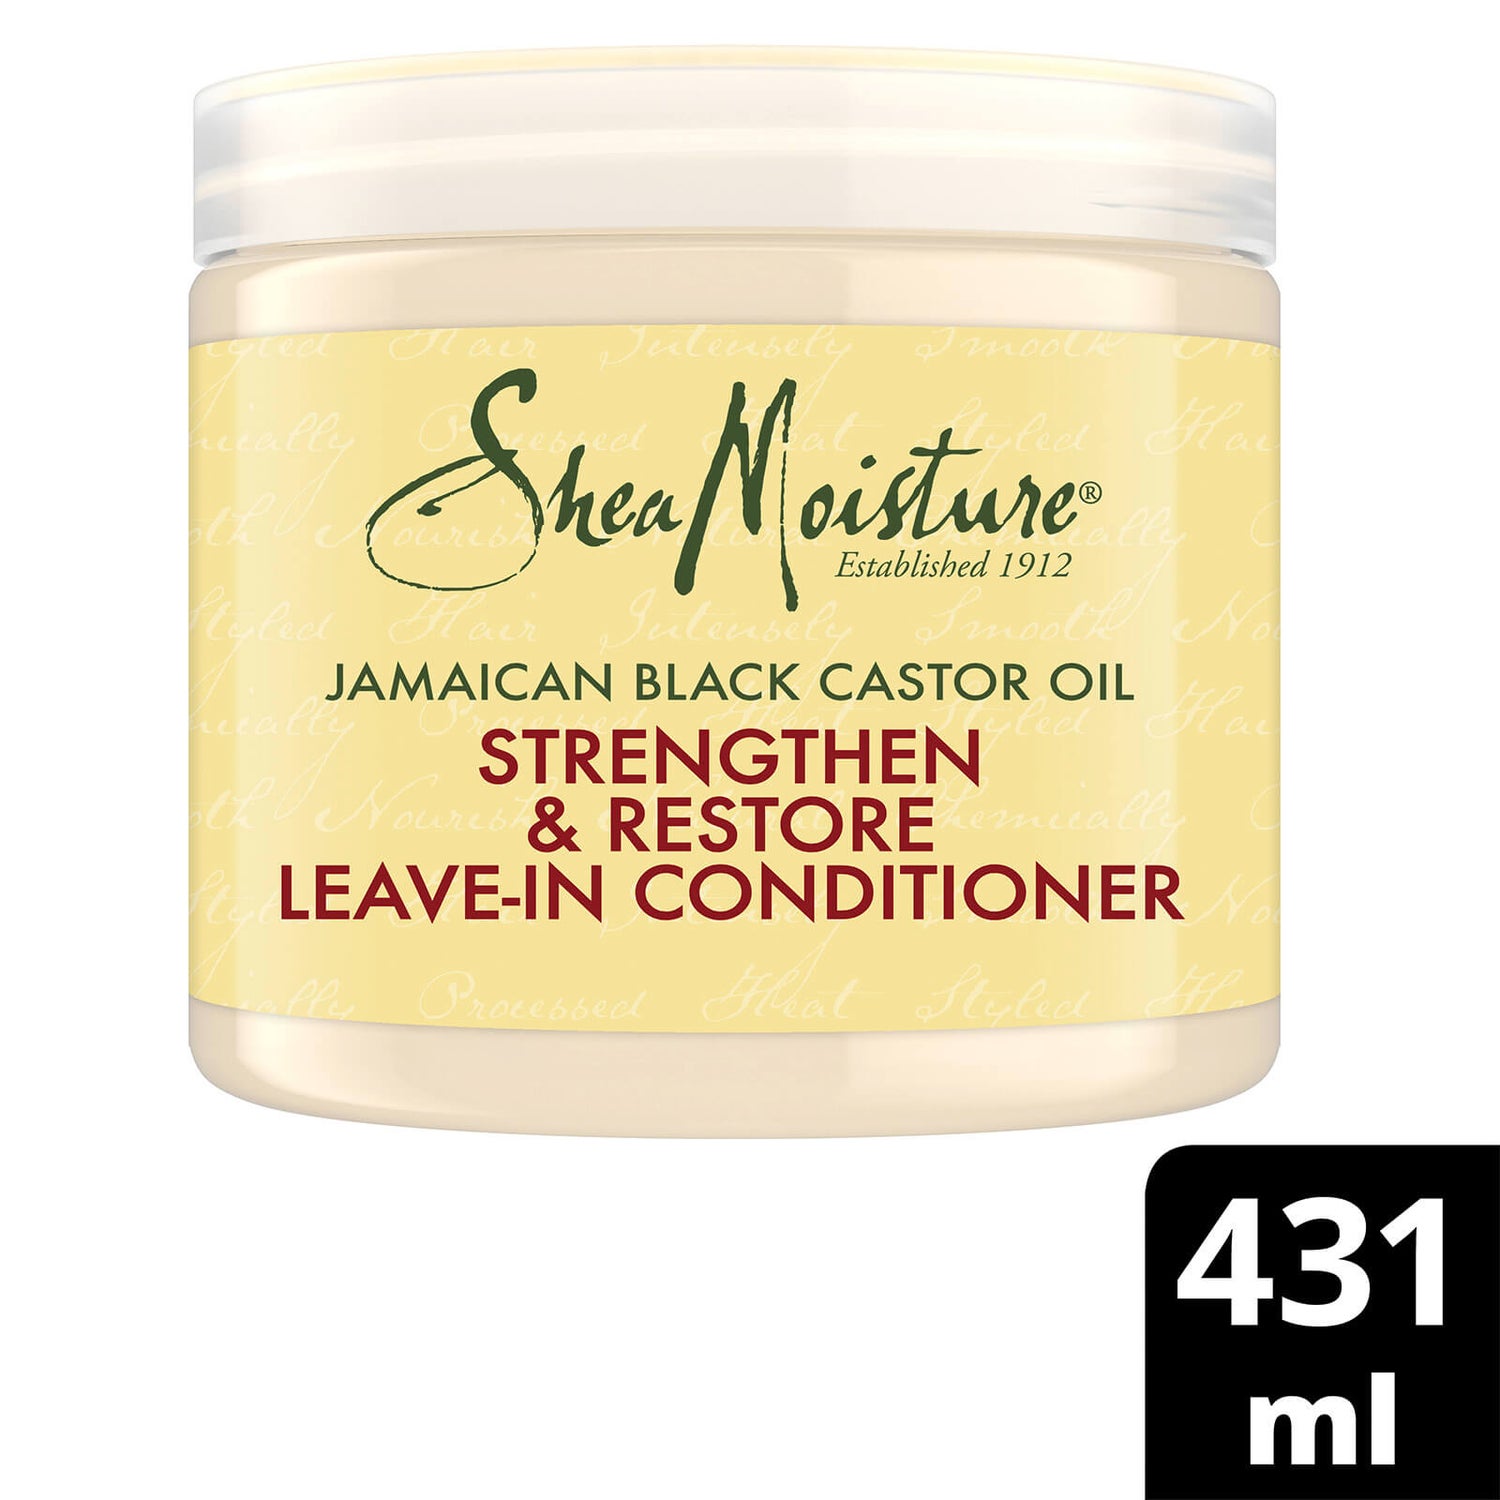 Hiuksiin jätettävä Shea Moisture Jamaican Black Castor Oil Strengthen, Grow & Restore -hoitoaine 454g